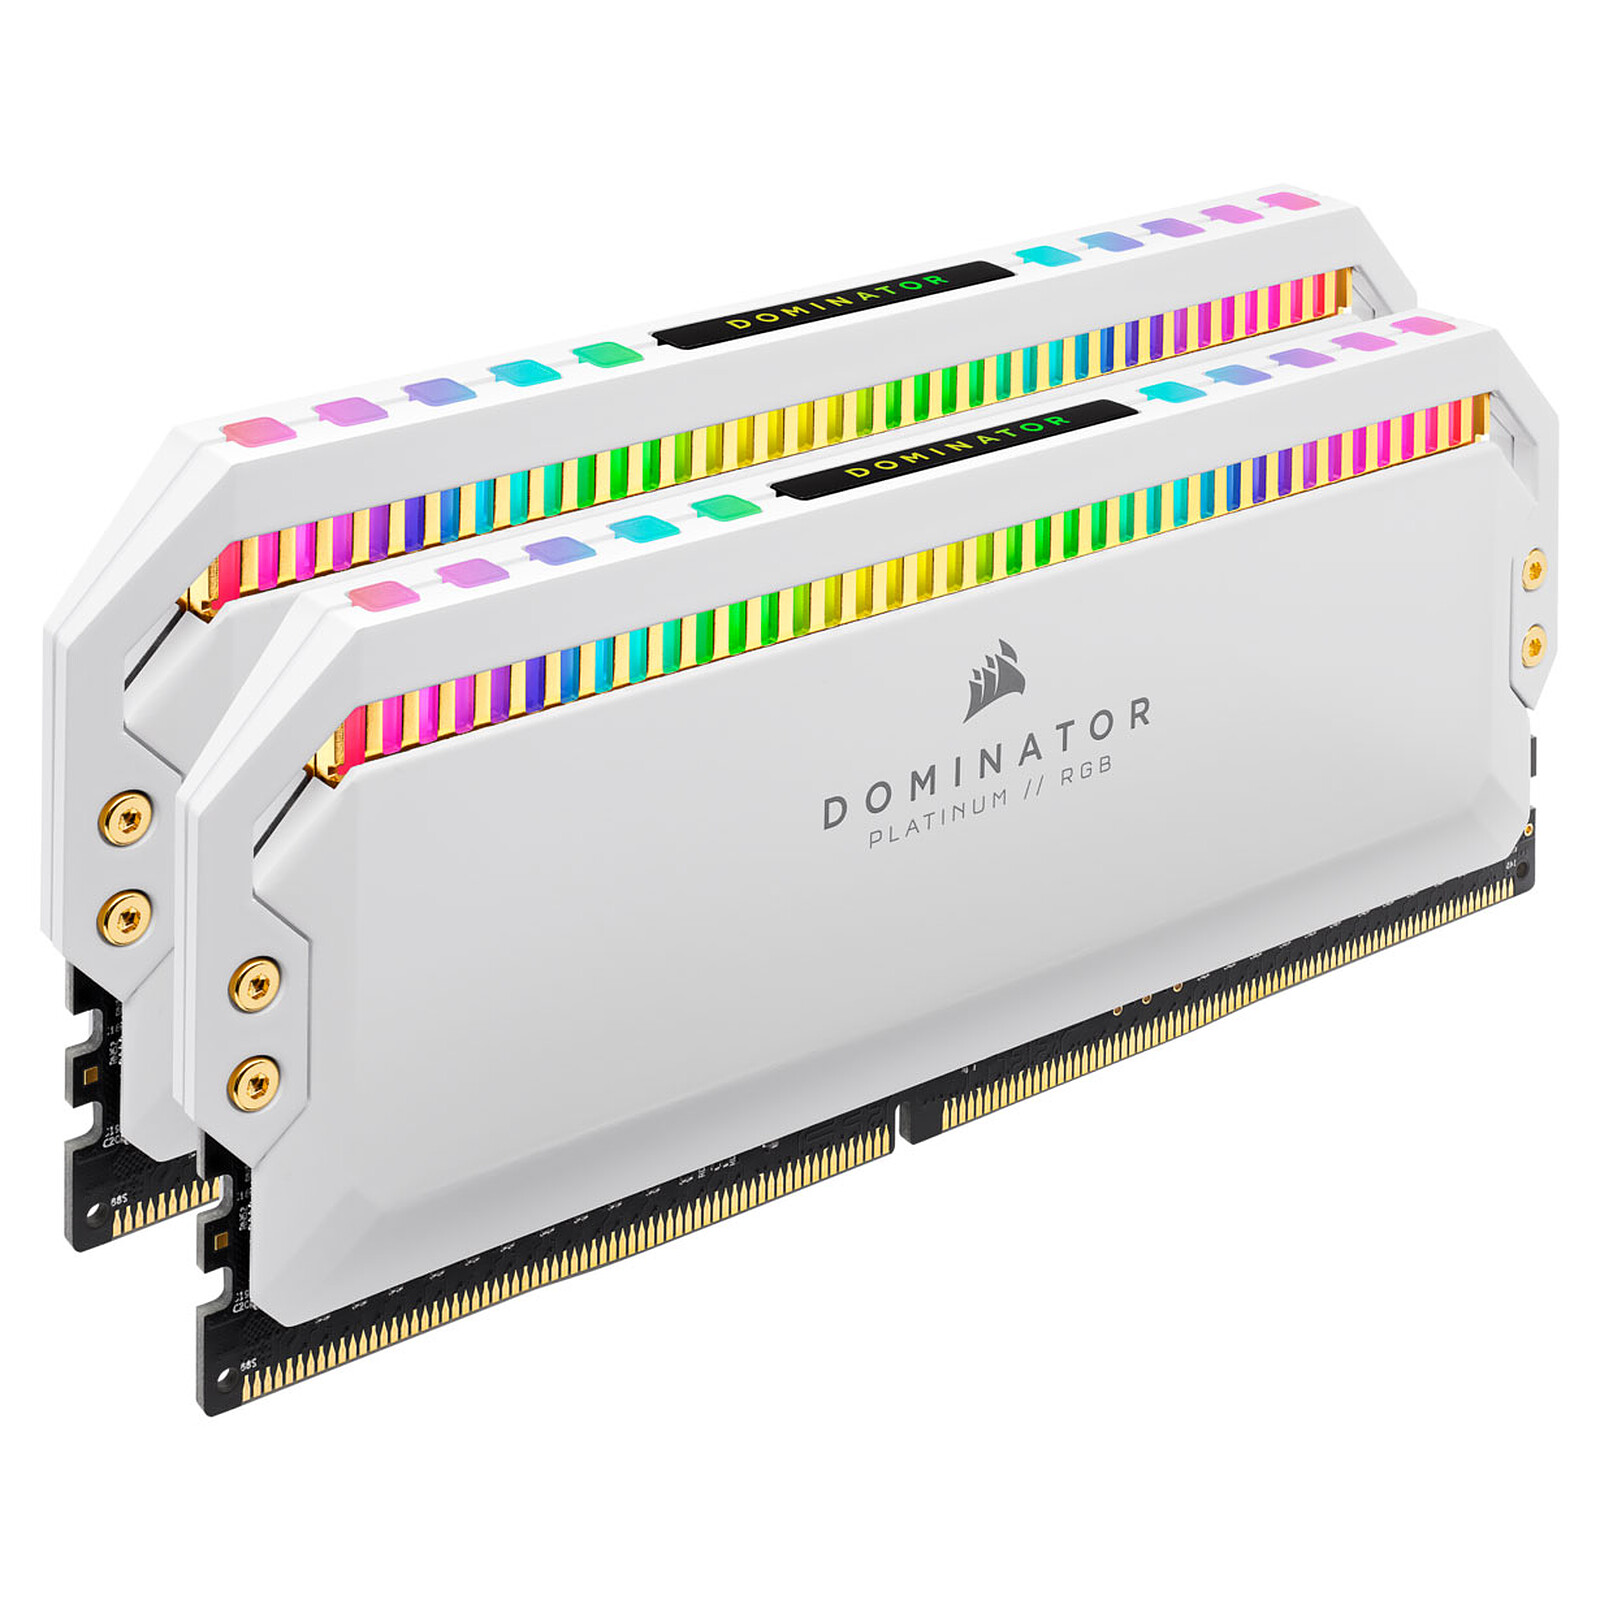 Corsair Vengeance RGB Pro SL Blanche - 2 x 8 Go (16 Go) - DDR4 3200 MHz -  CL16 - Mémoire Corsair sur